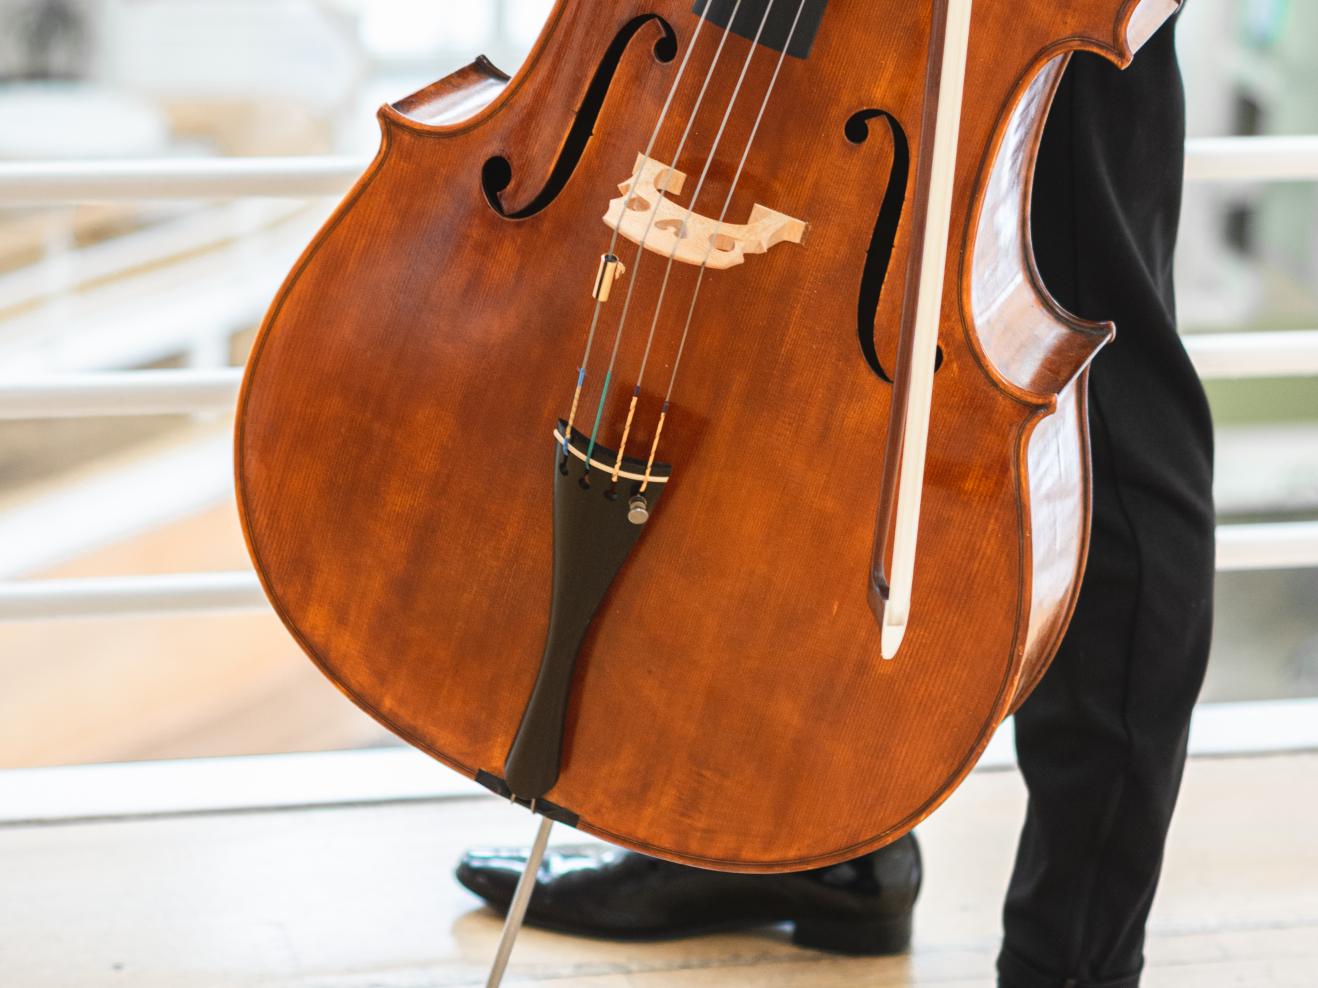 Bild Knopf-Cello